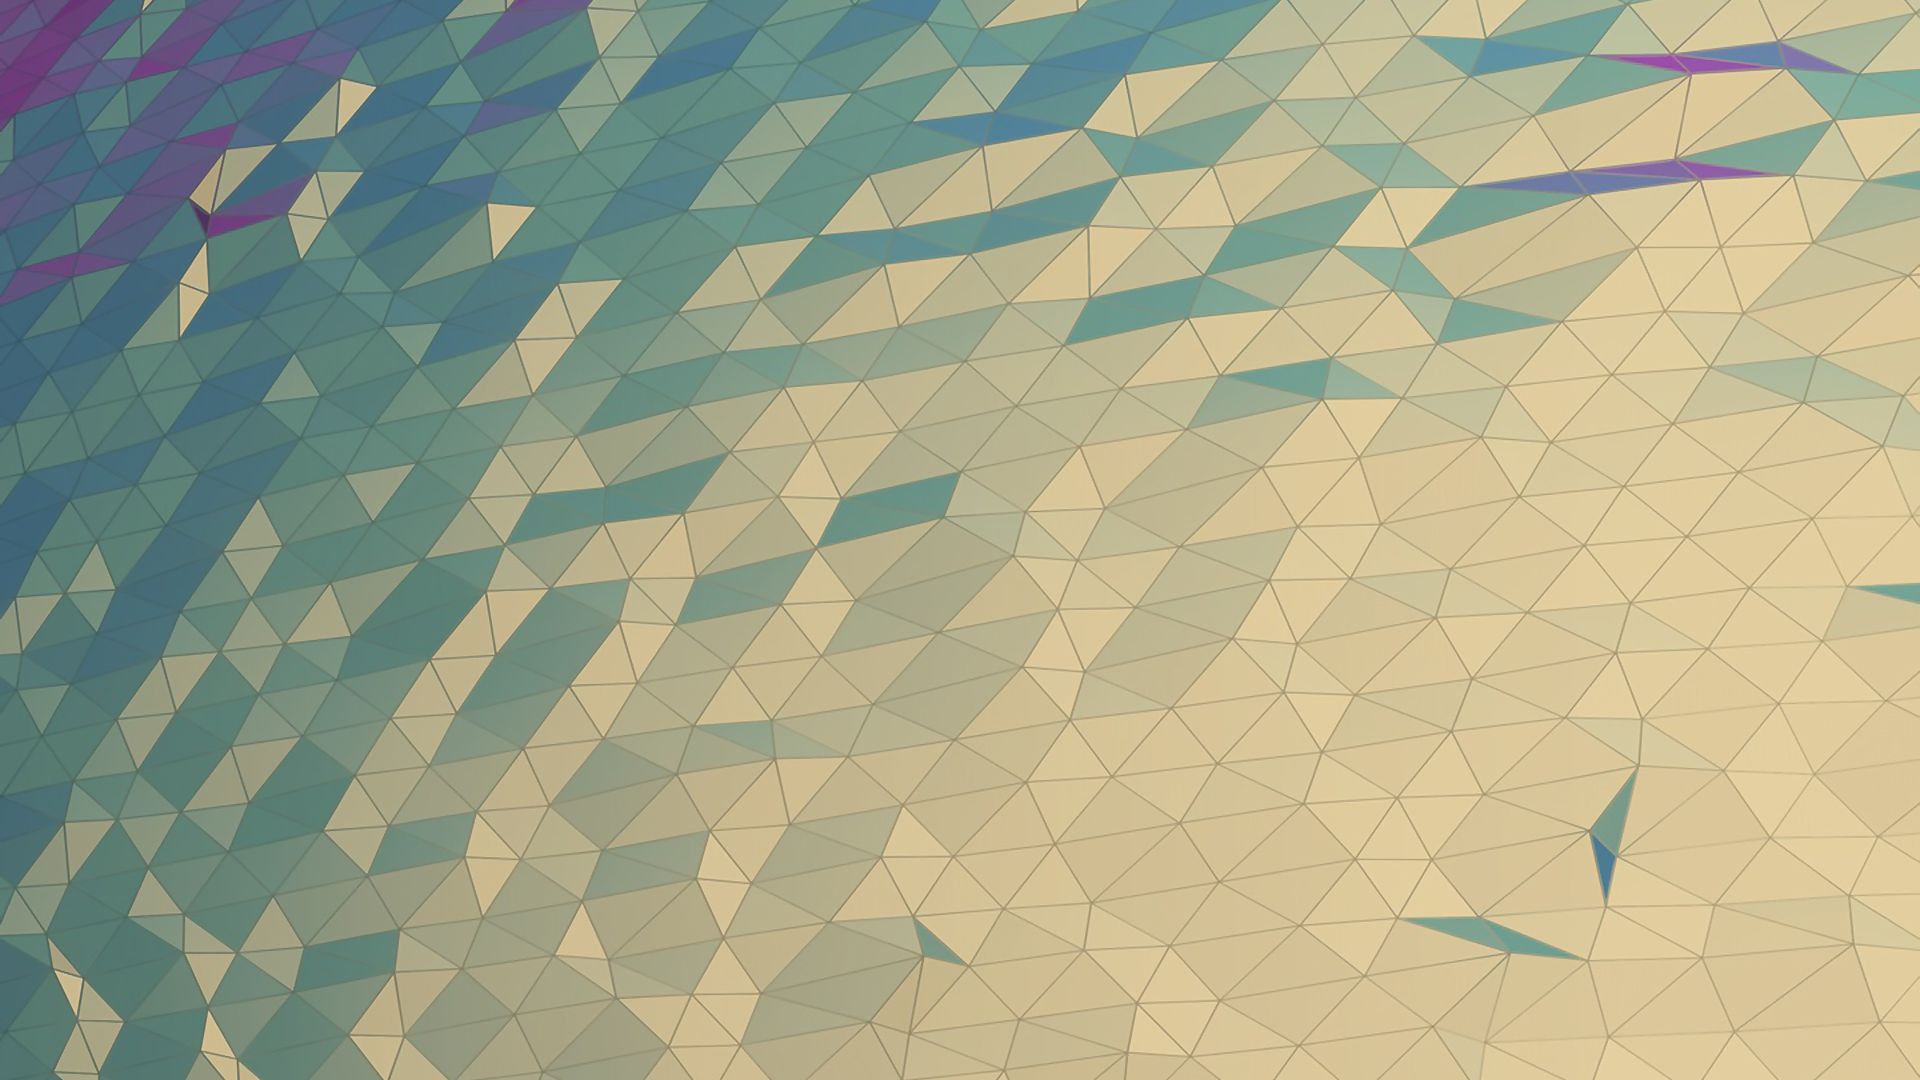 Isometric and Geometry inspired Desktop Wallpapers - Dzinepress